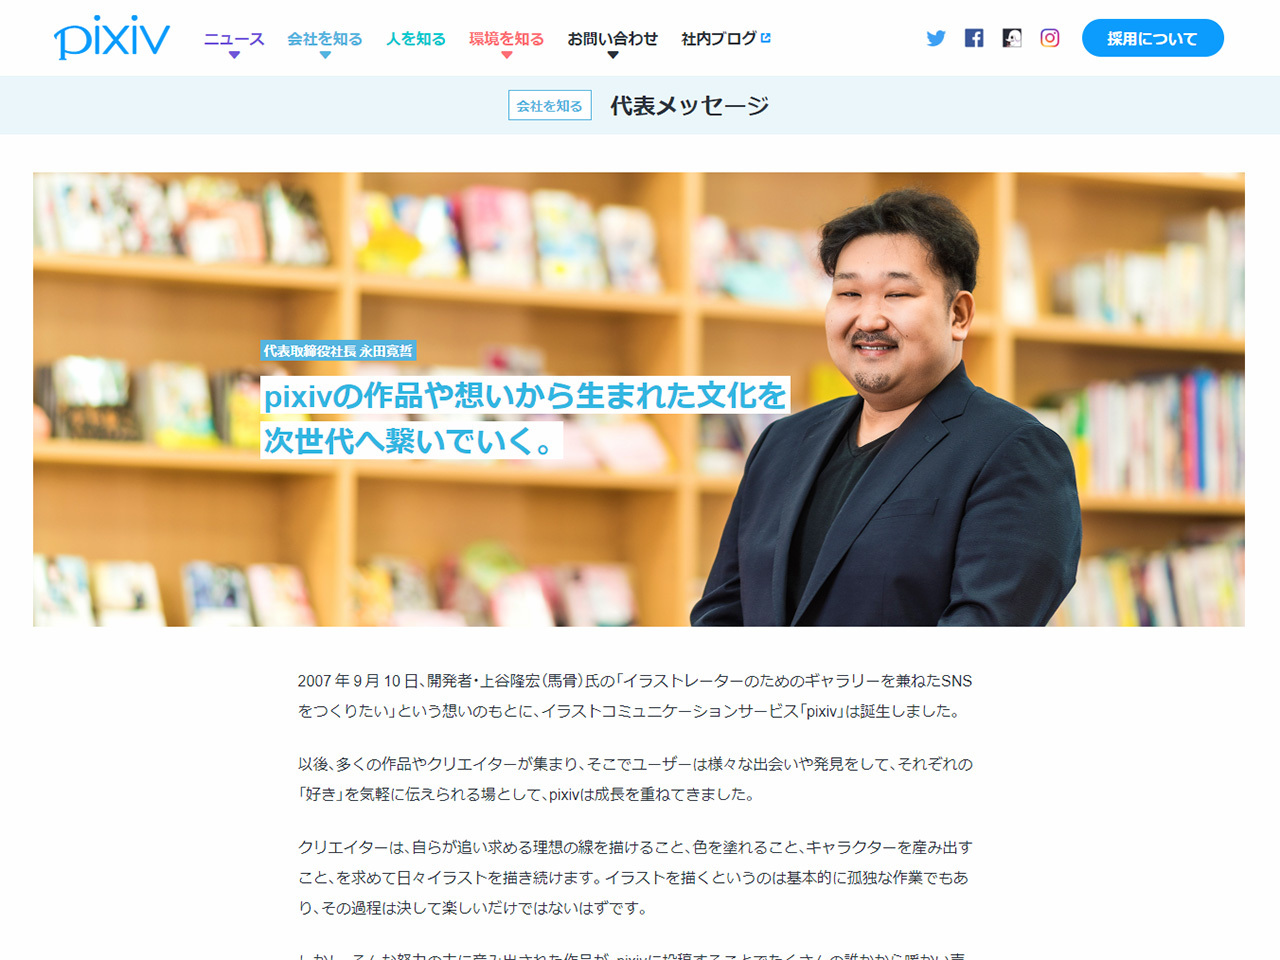 ピクシブ永田氏が代表取締役を辞任 訴訟の影響で 職責を果たすのが困難 Cnet Japan